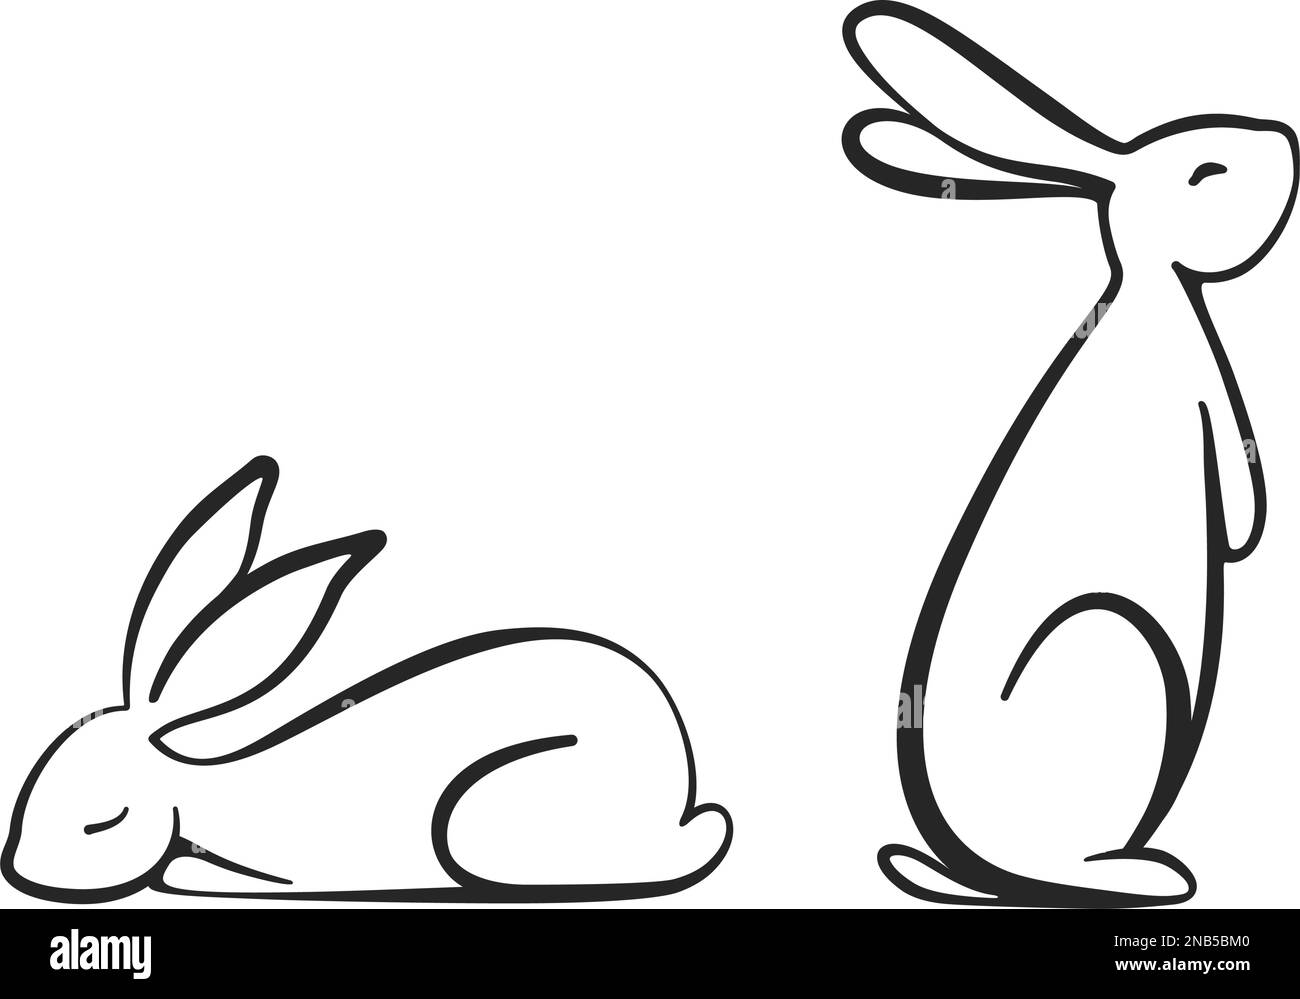 Lapins de lapin se coupent comme un dessin de ligne dans le vecteur Illustration de Vecteur